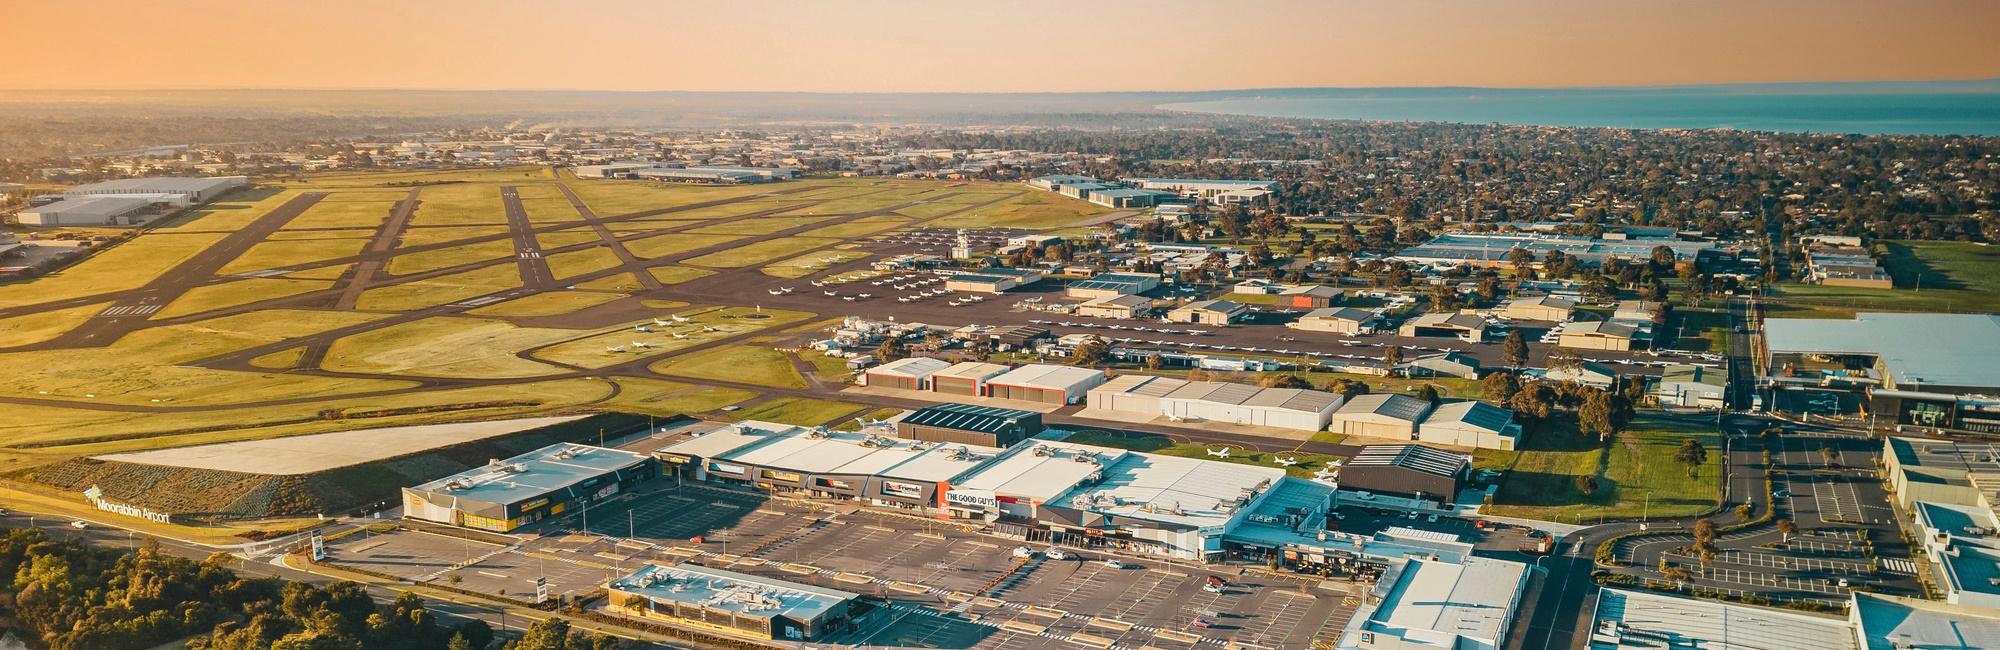 Aerial view Moorabbin Airport